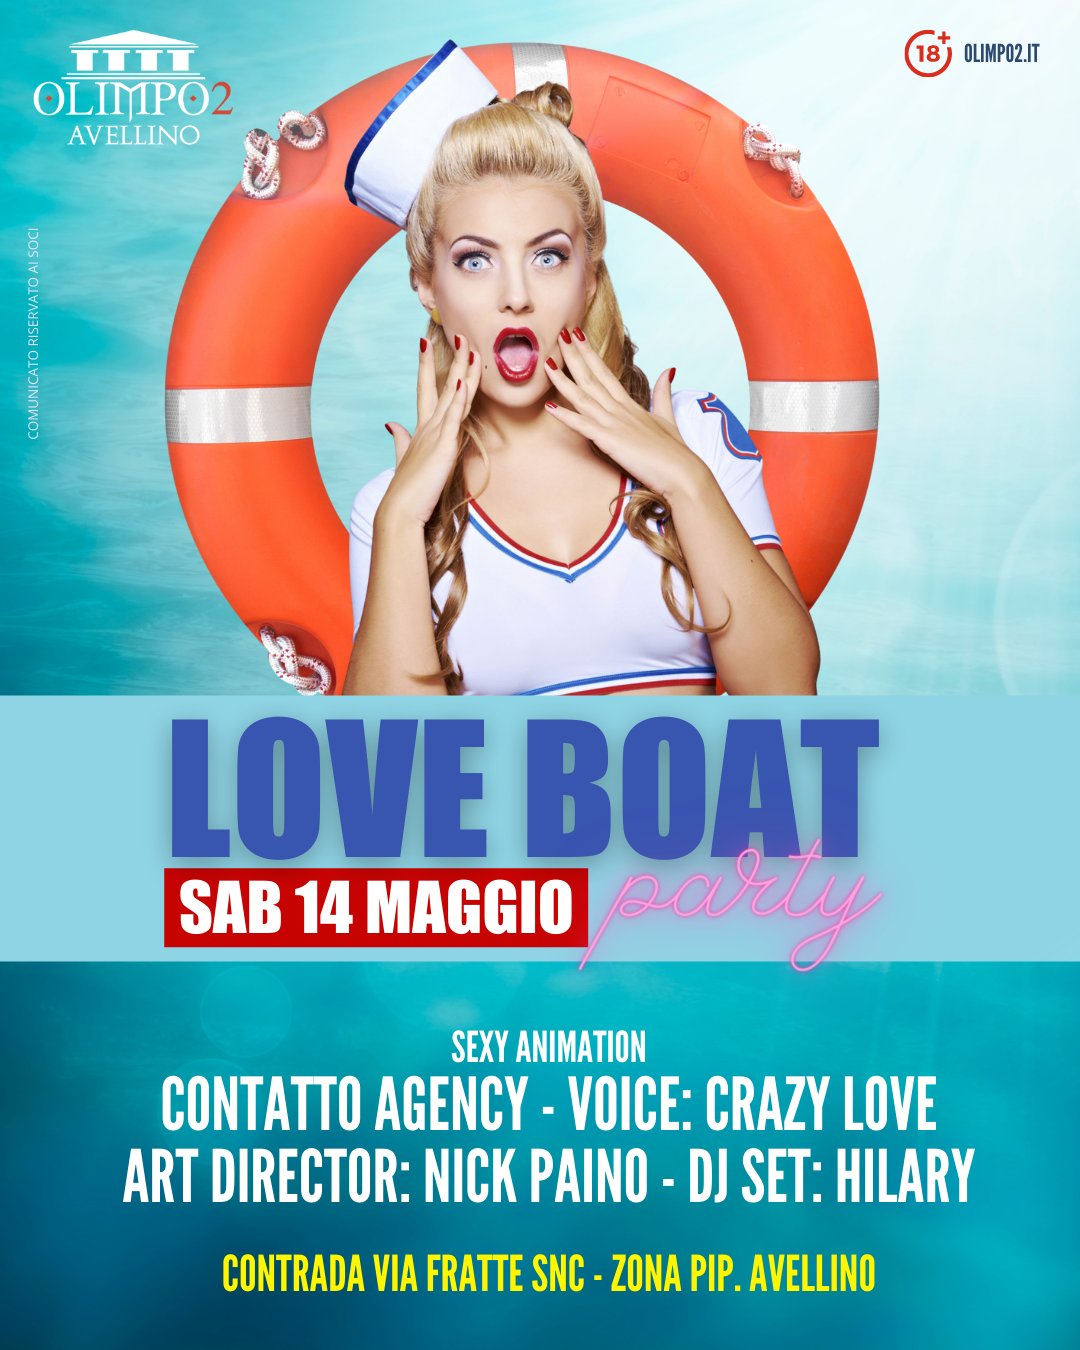 love boat party olimpo 2 avellino